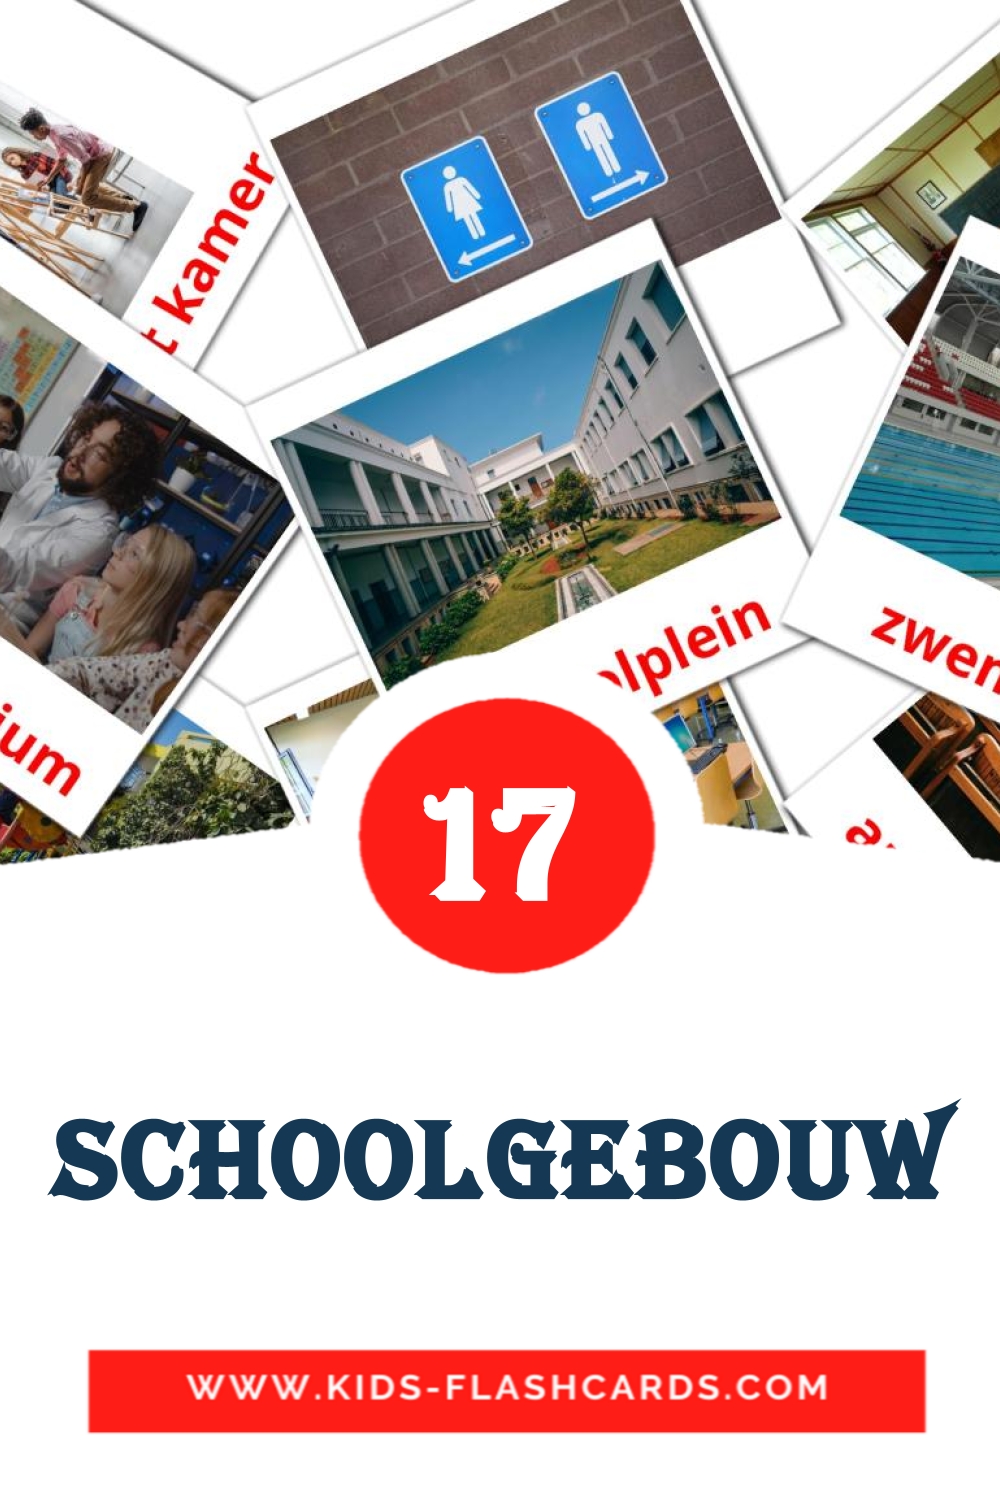 17 carte illustrate di Schoolgebouw per la scuola materna in olandese